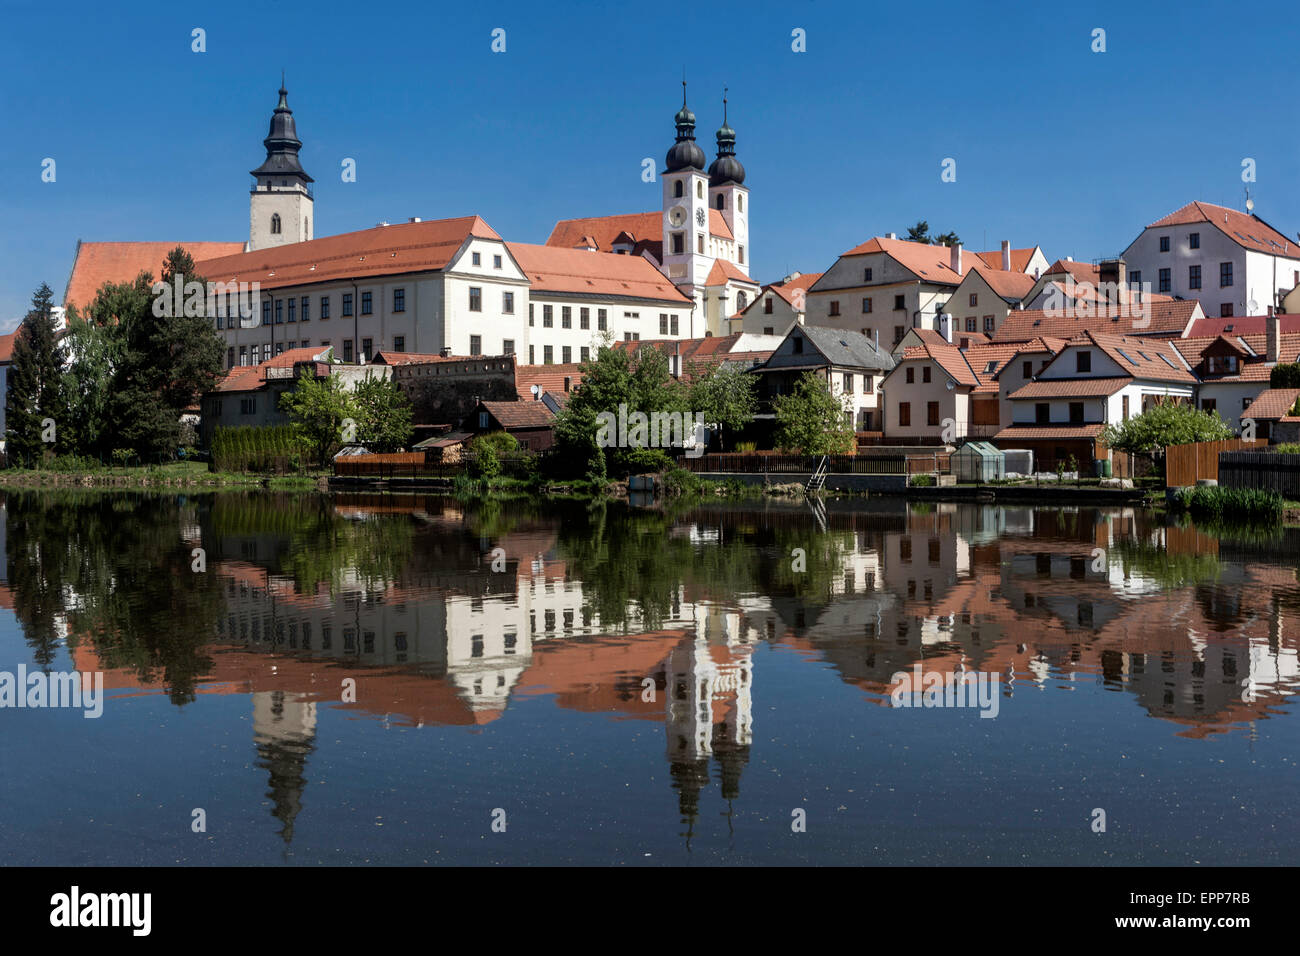 La petite ville tchèque Telc - vue sur l'étang et le paysage urbain de la ville Telč République tchèque Europe site du patrimoine mondial de l'UNESCO Banque D'Images